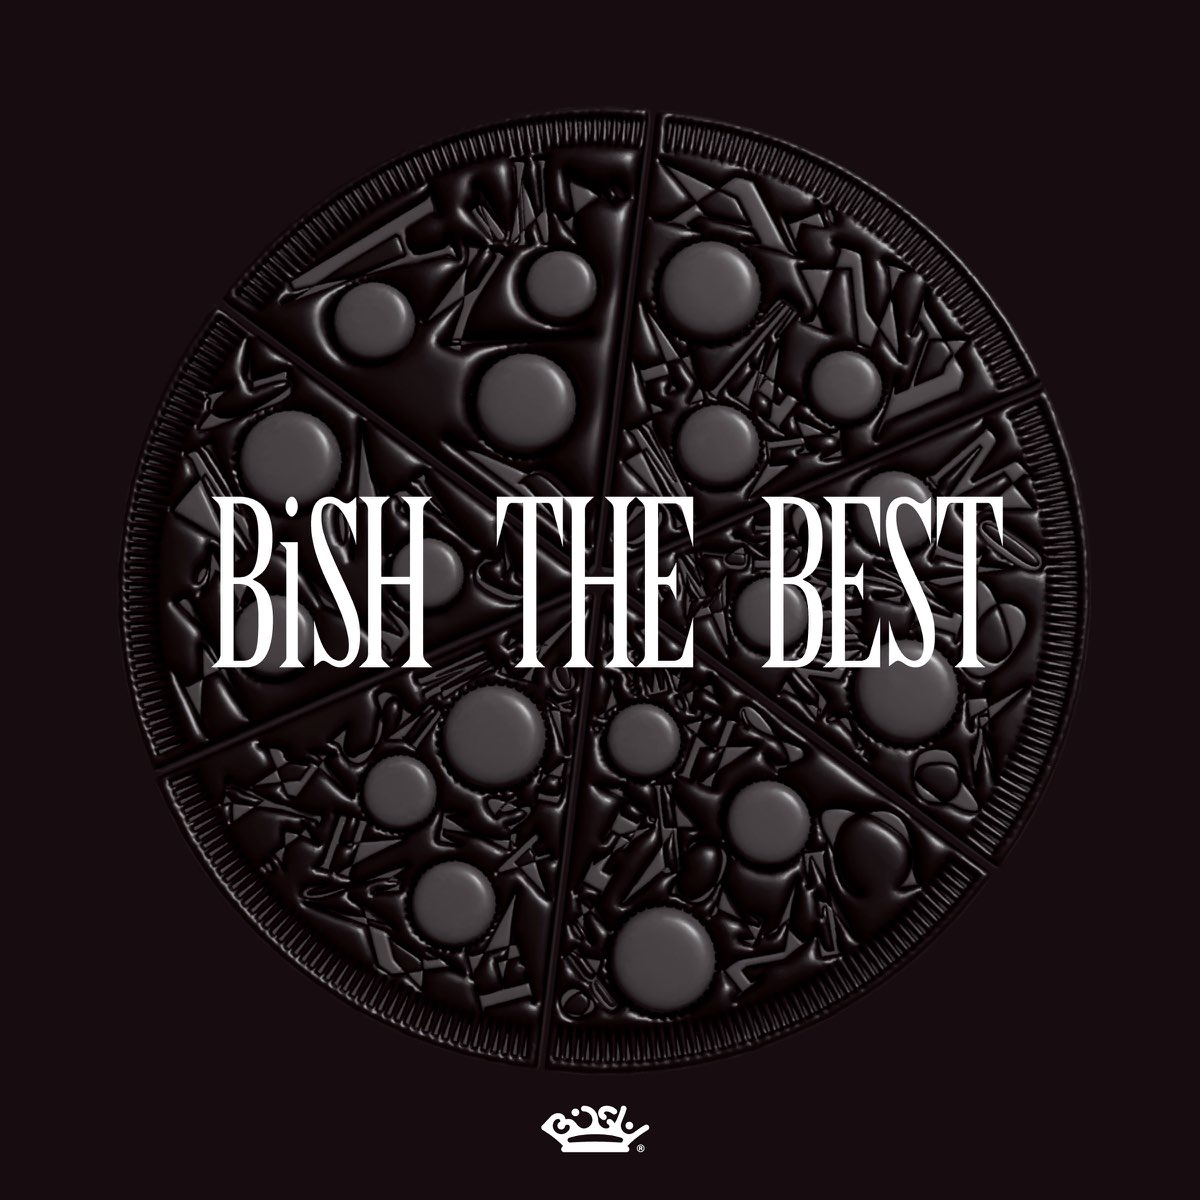 BiSH アルバム - CD